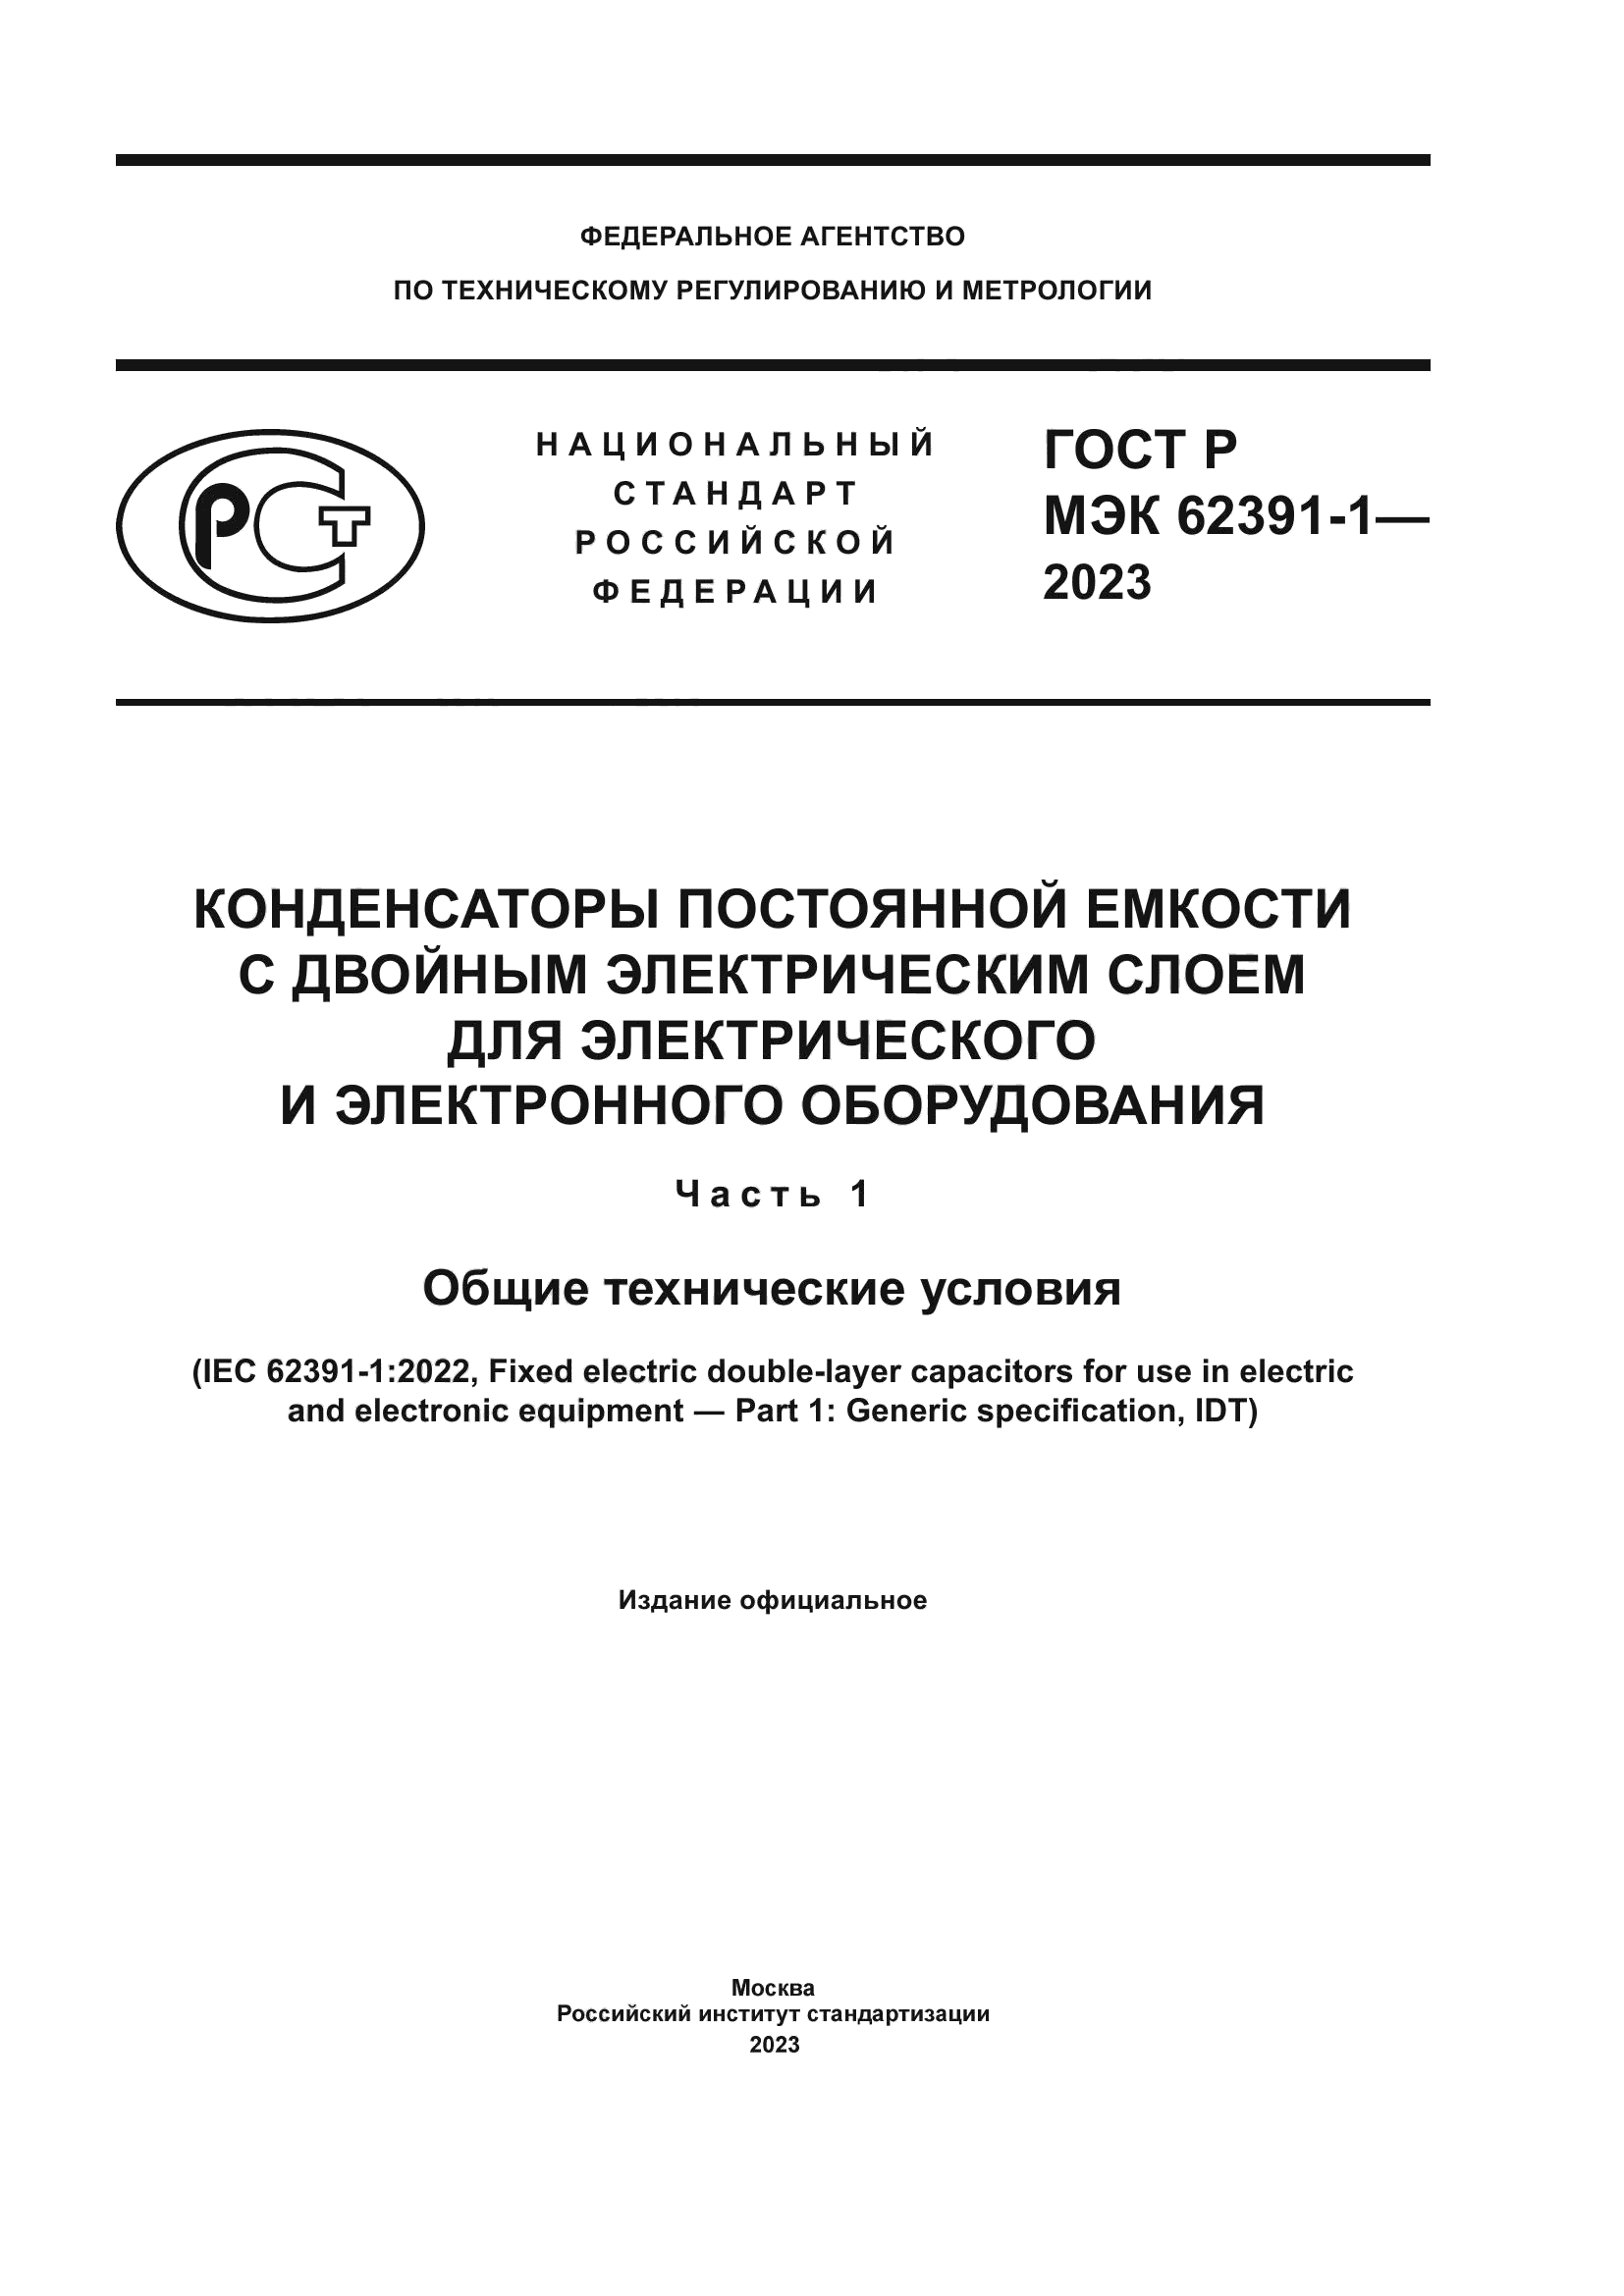 ГОСТ Р МЭК 62391-1-2023